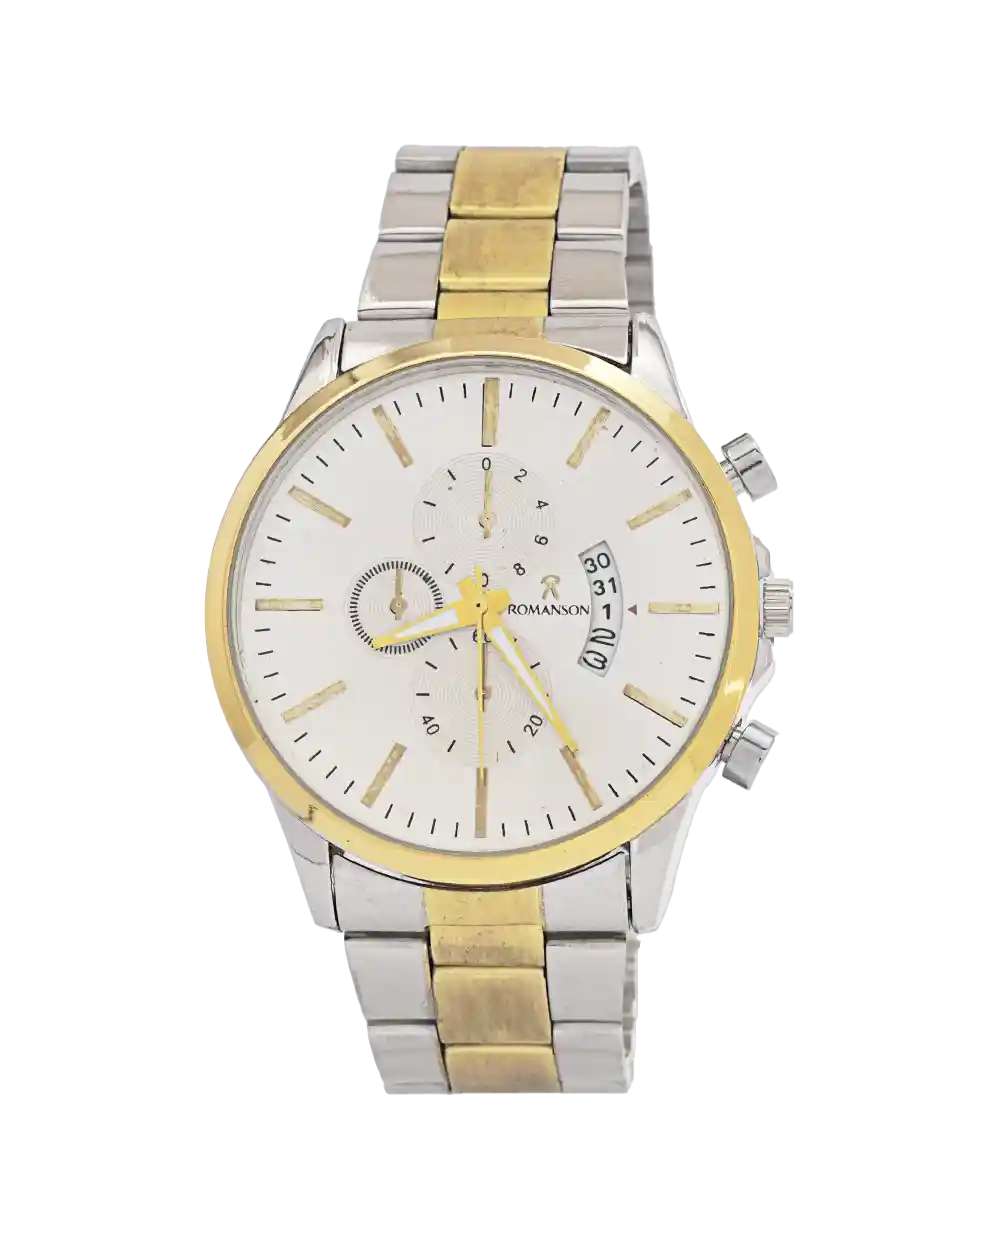 خرید ساعت مچی مردانه رومانسون ROMANSON مدل 1989 بند استیل نقره ای طلایی رنگ ثابت و صفحه سفید بهترین قیمت به همراه ارسال رایگان و جعبه